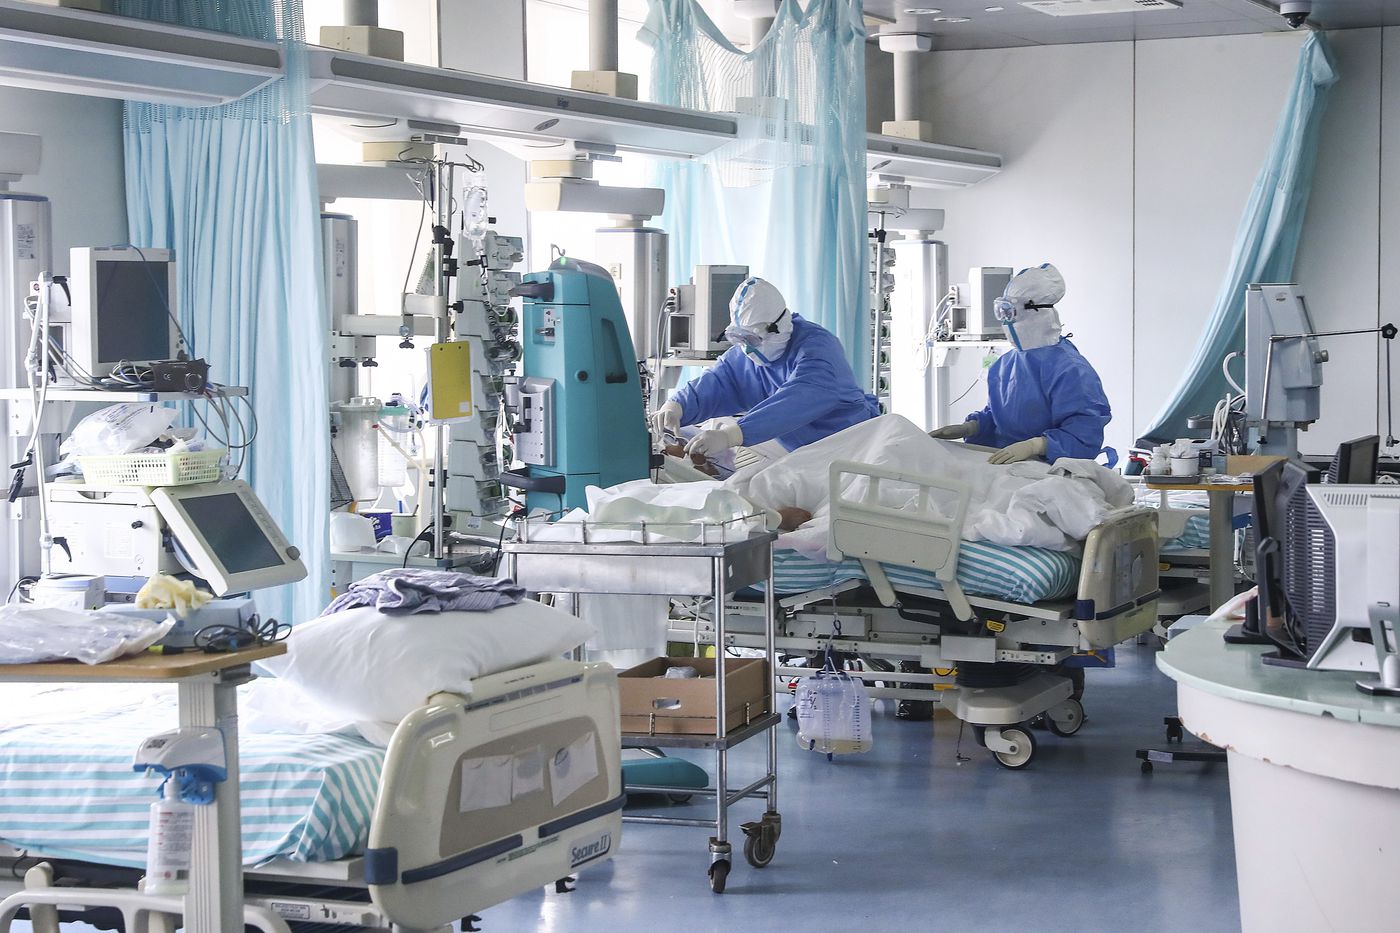 Lietuvos ligoninėse šiuo metu gydomi 907 COVID-19 pacientai. 80 iš jų – reanimacijoje, šeštadienį pranešė Statistikos departamentas.